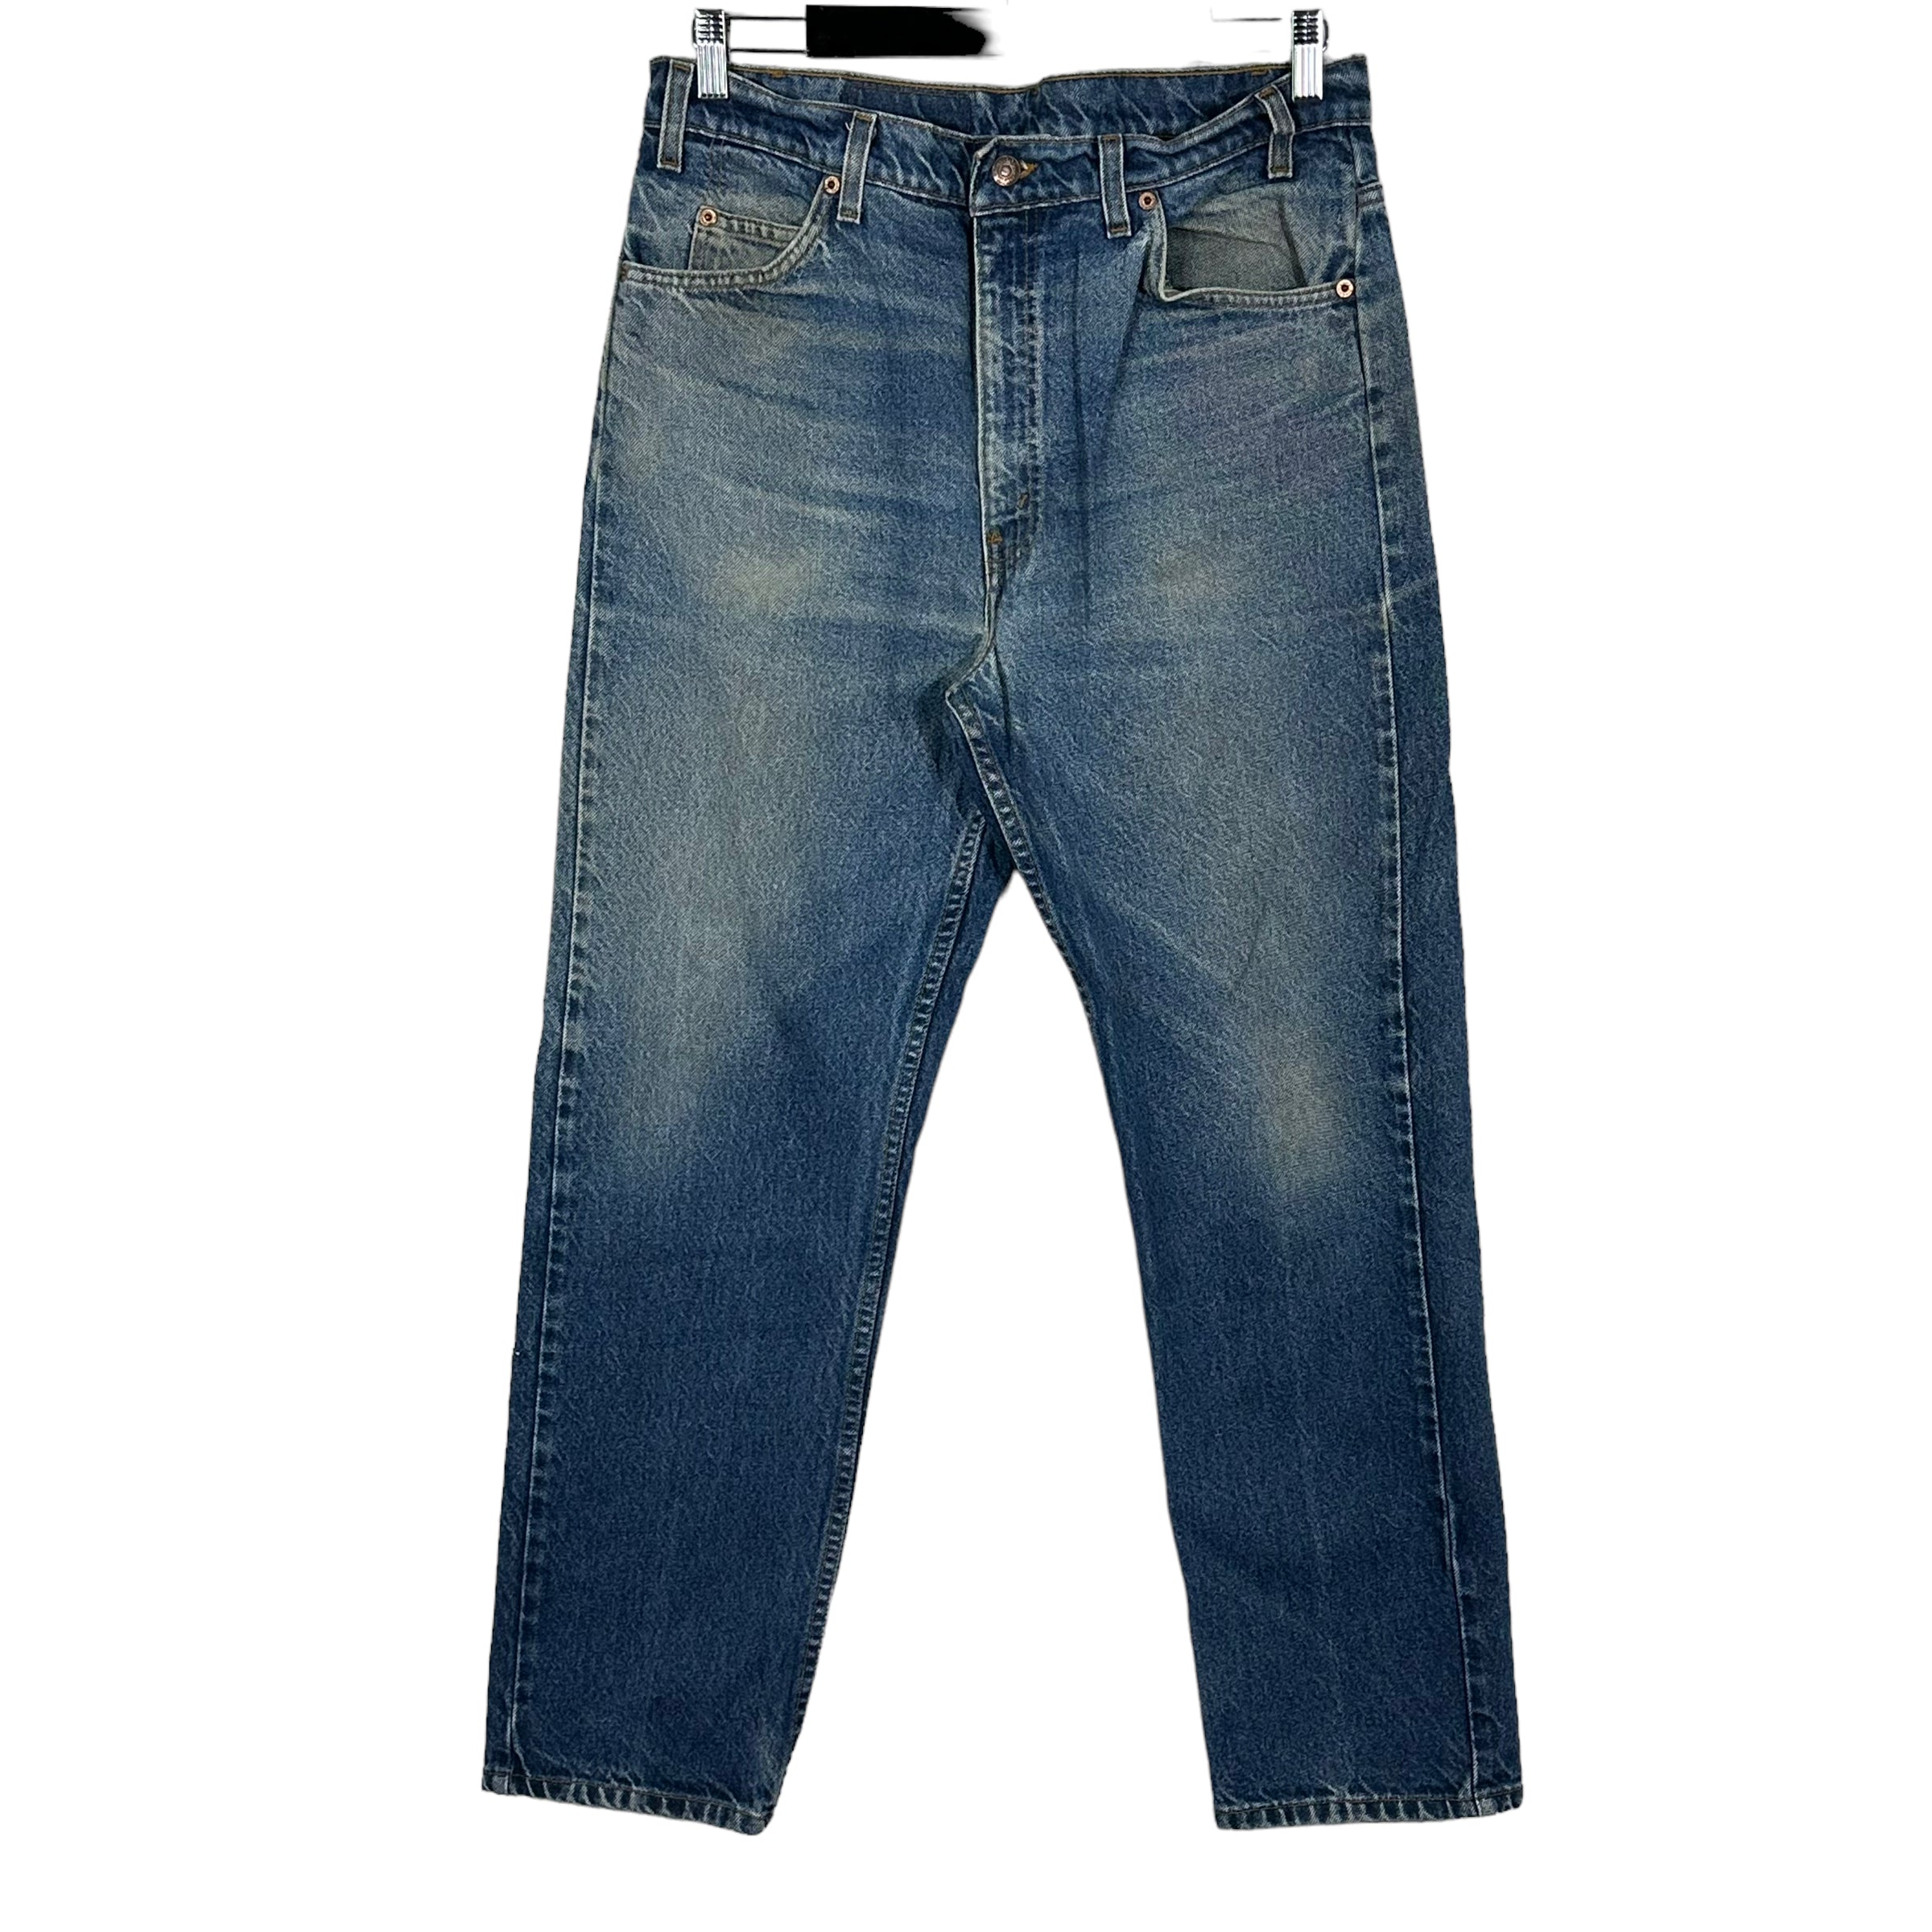 Vintage Levi's 505 Denim Jeans 90s